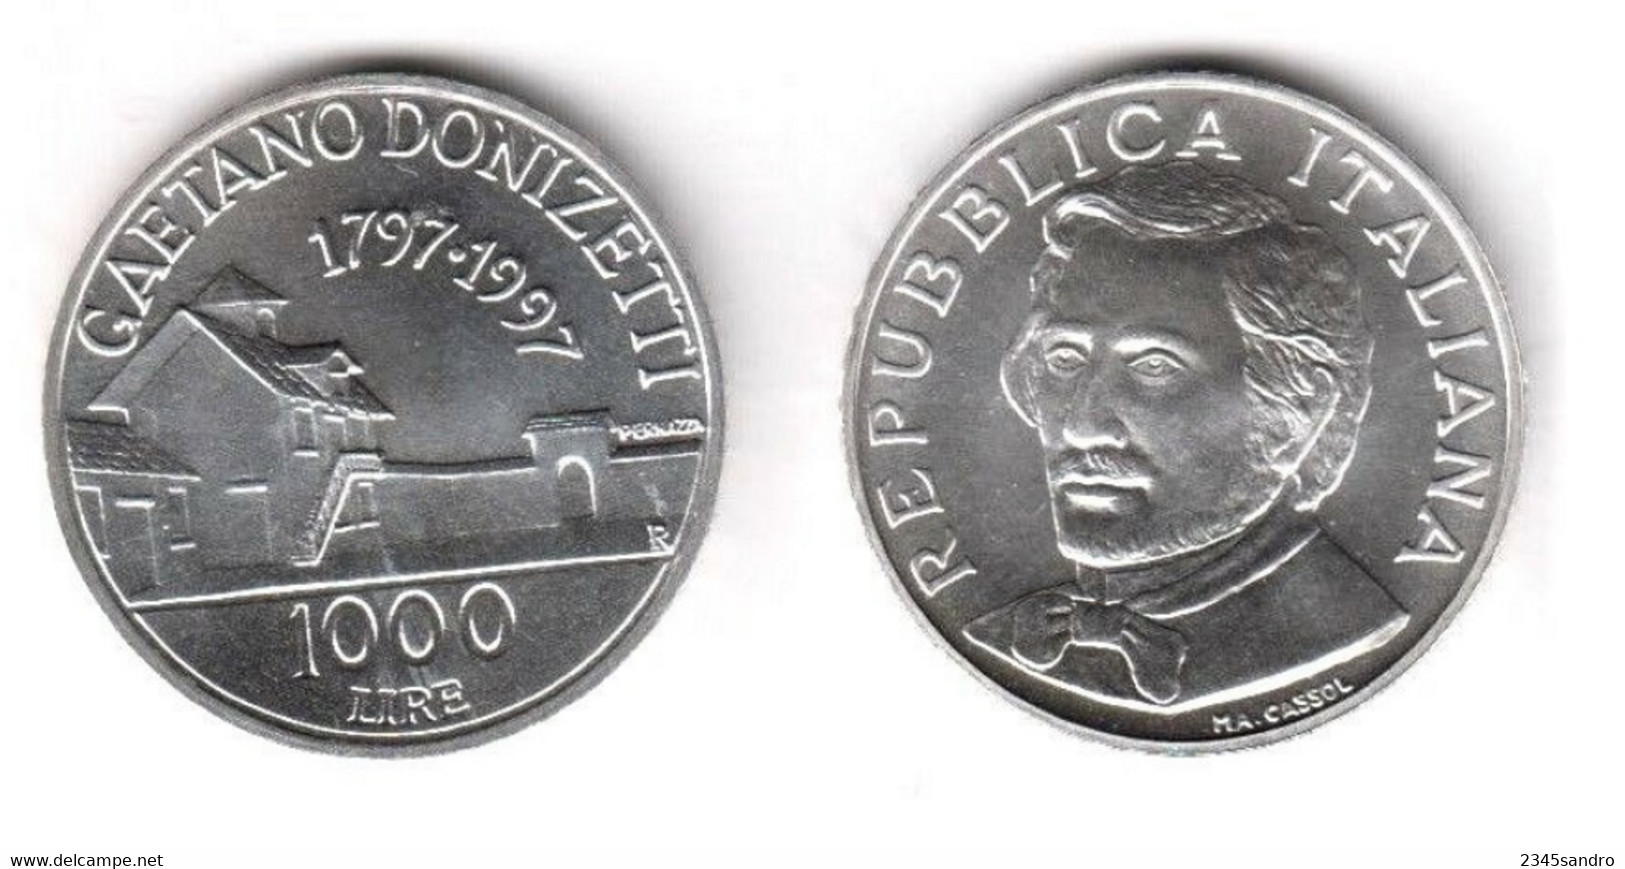 1000 LIRE 1997 "DONIZETTI" COMMEMORATIVA ARGENTO FDC, Uncirculated, Stempelglanz, Fleur De Coin REPUBBLICA ITALIANA - 1 000 Lire